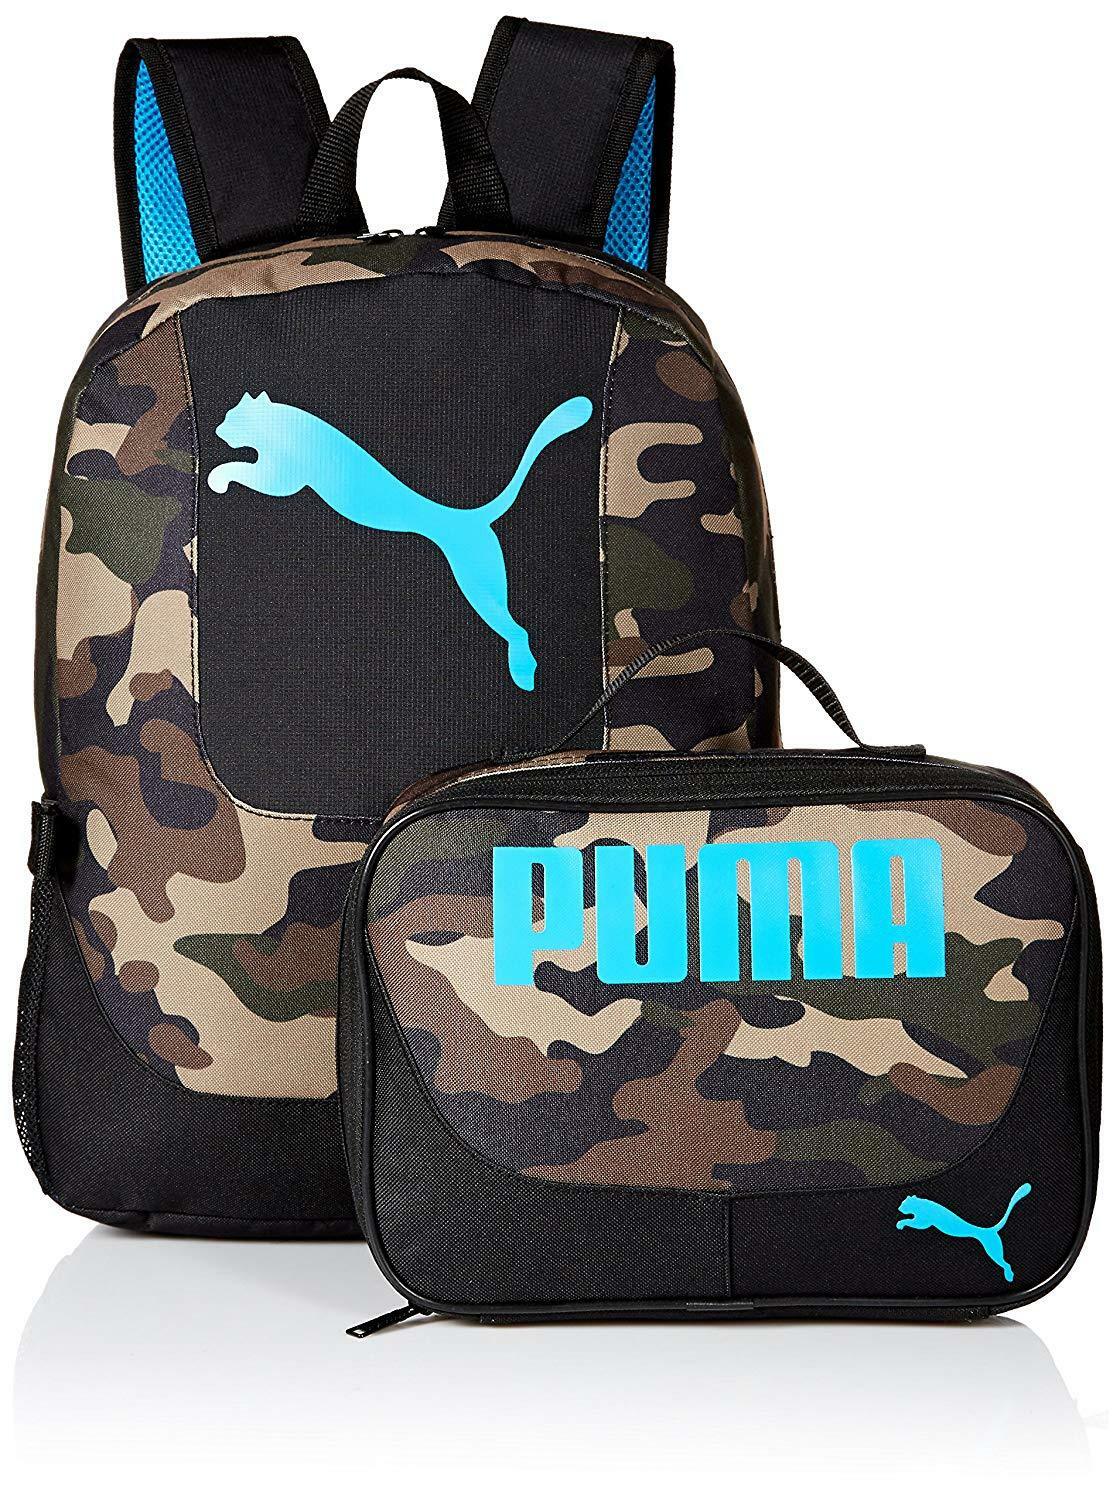 puma backpacks at target